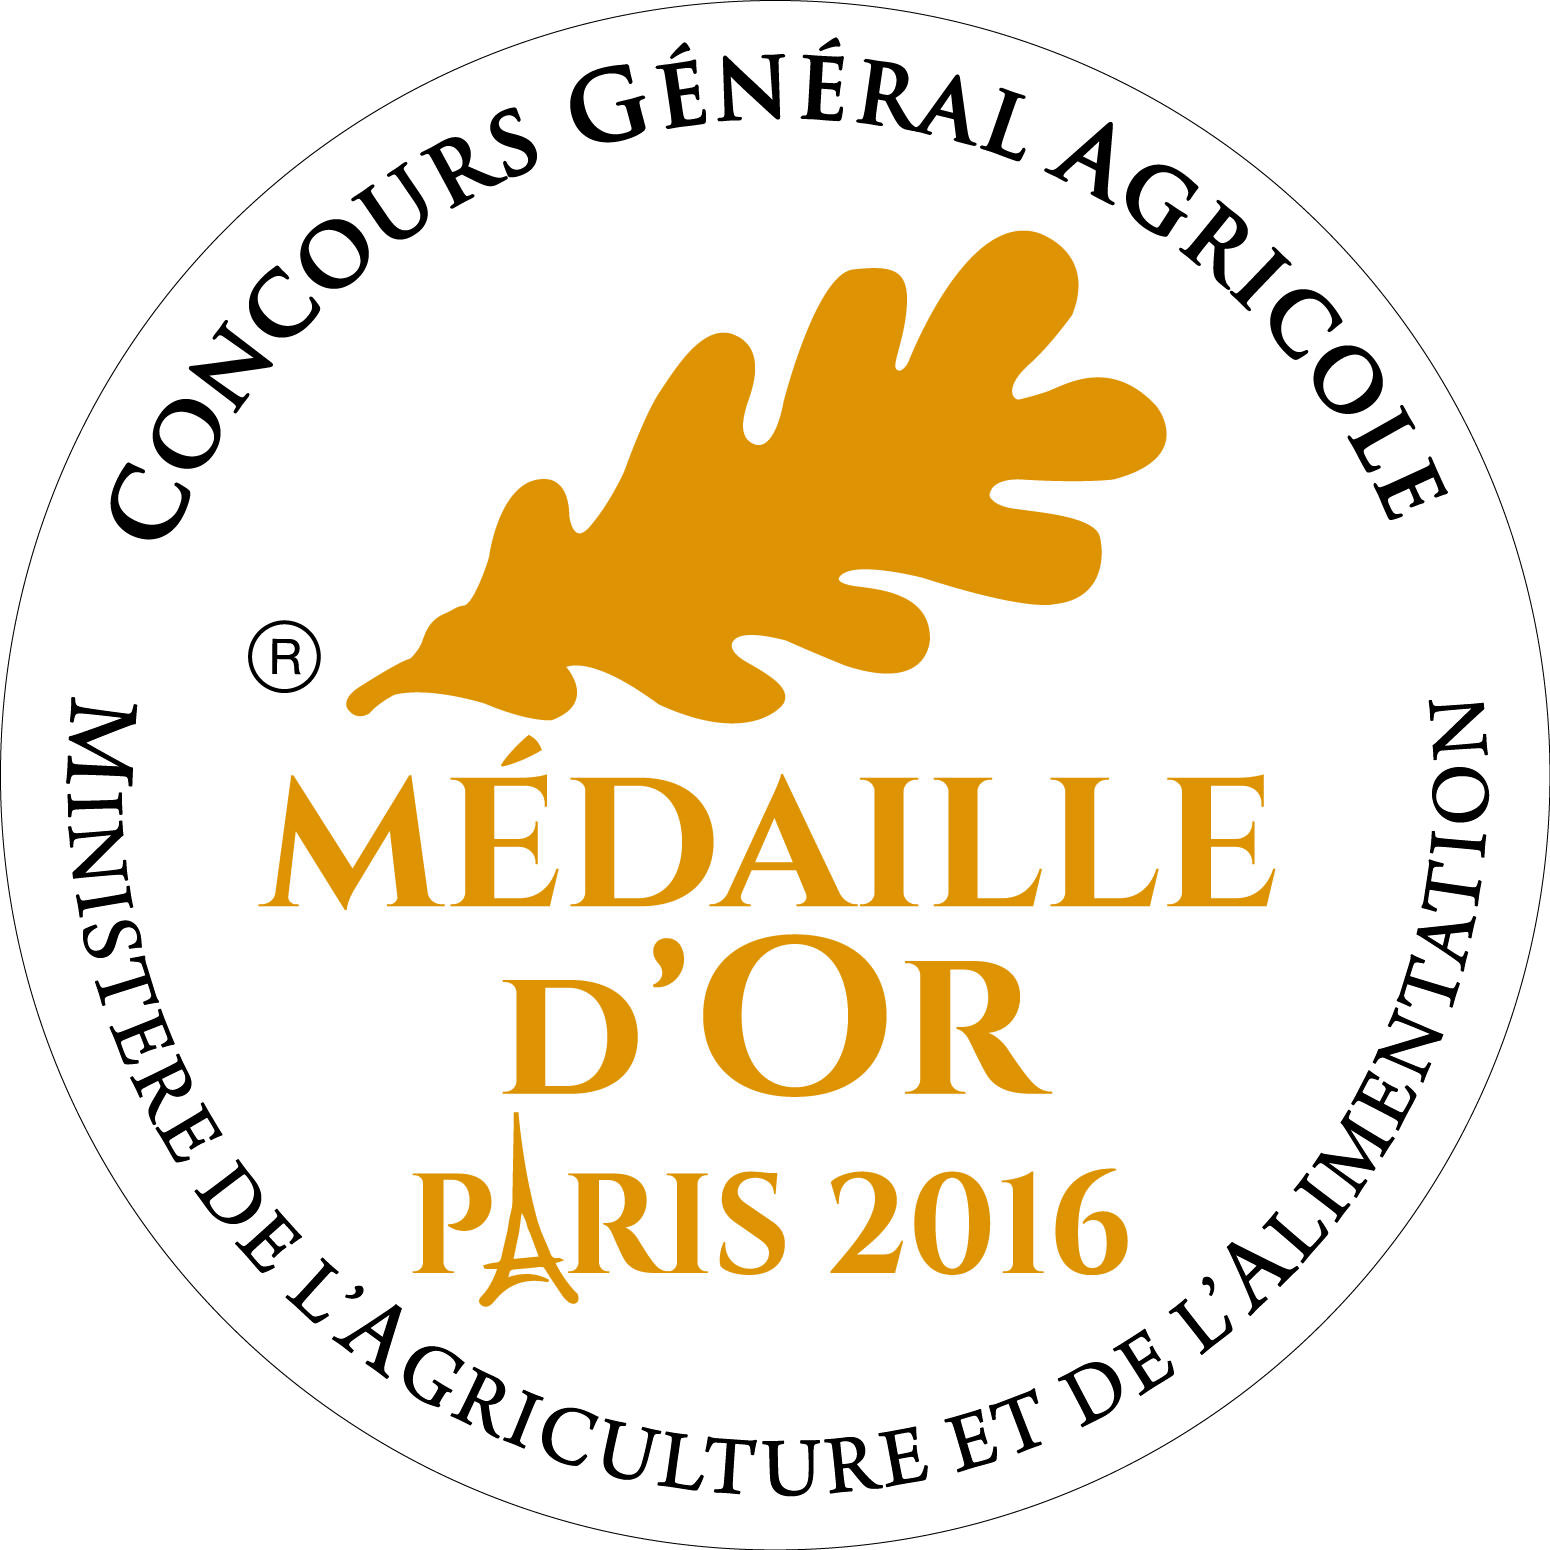 CONCOURS GENERAL AGRICOLE PARIS 2016